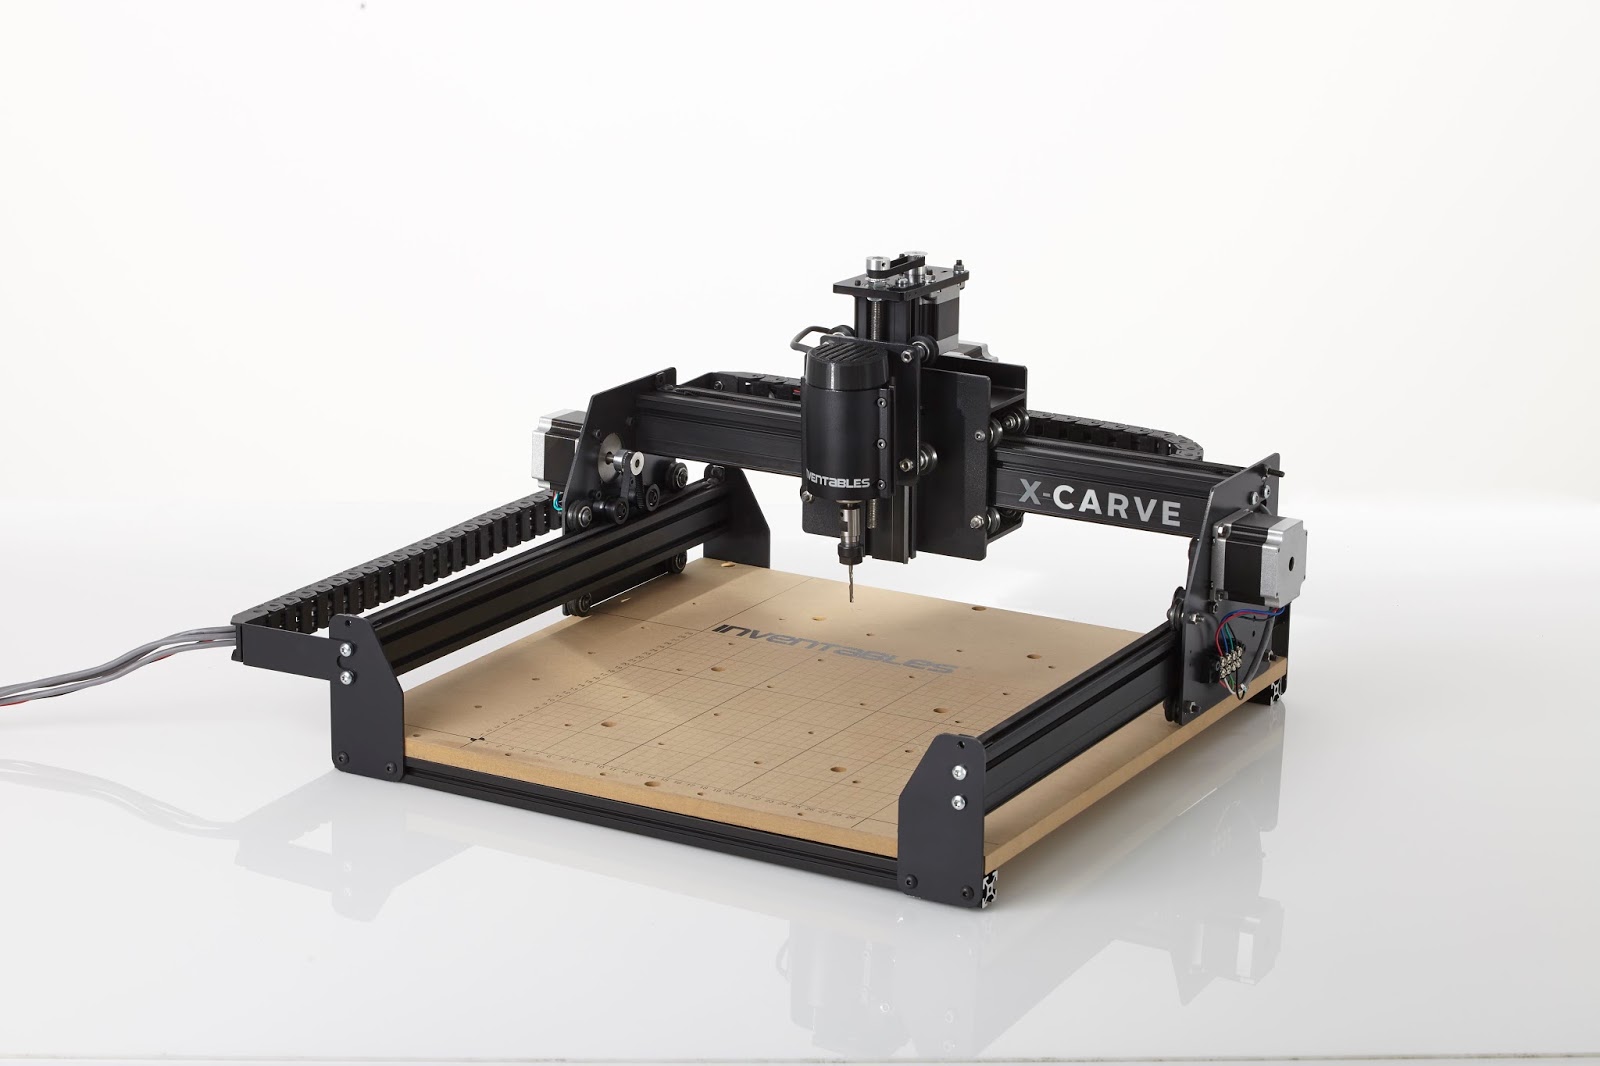 Download Dali-Lomo: X-Carve DIY kit by INVENTABLES